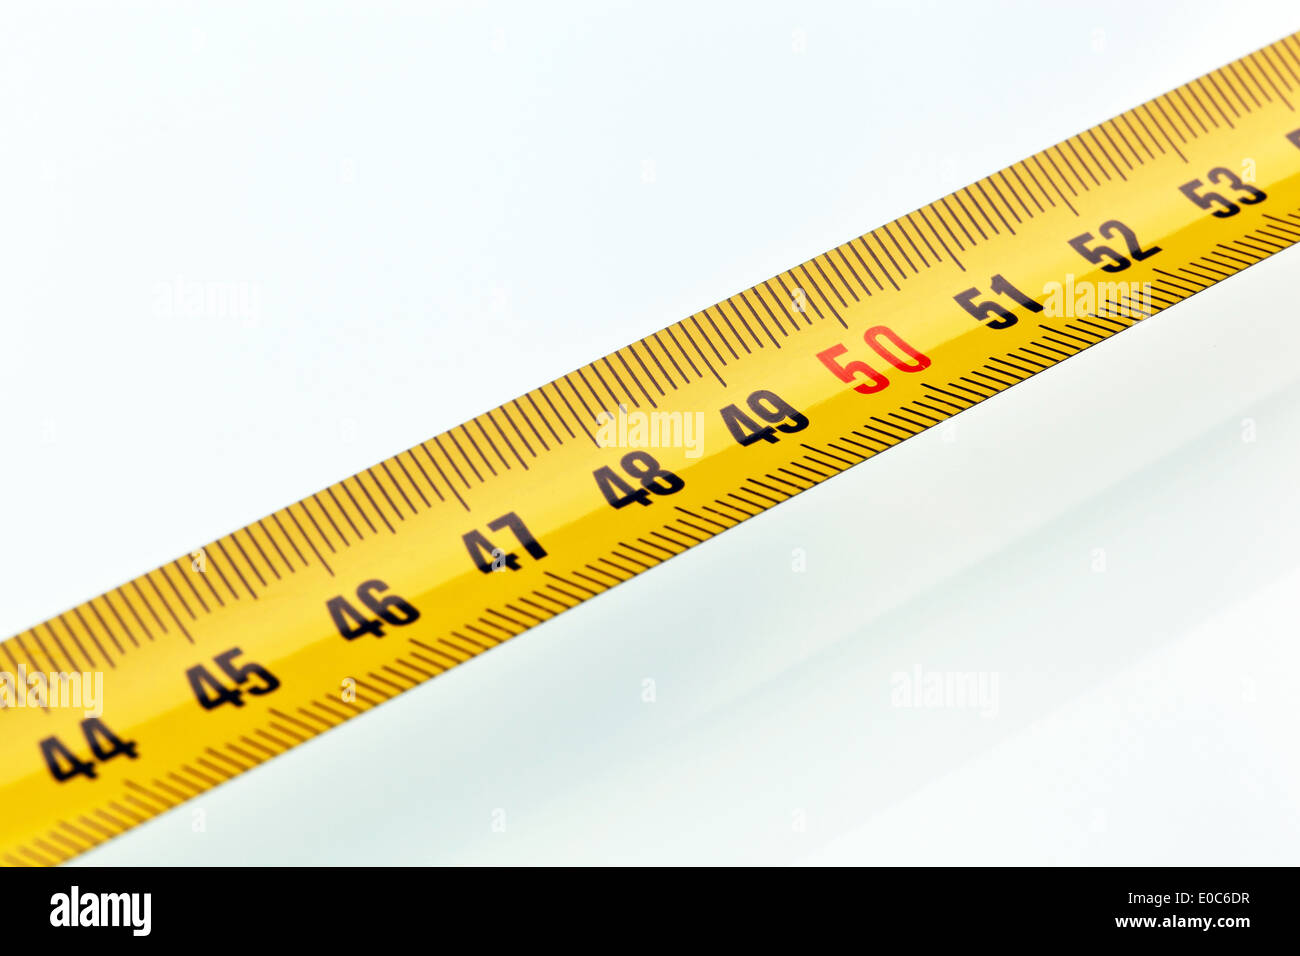 Dimensione La dimensione del nastro nastro di misurazione centimetri misurare la misura di nastro di unità di misura di nastro di misurazione Metri di esattezza esattamente millime Foto Stock